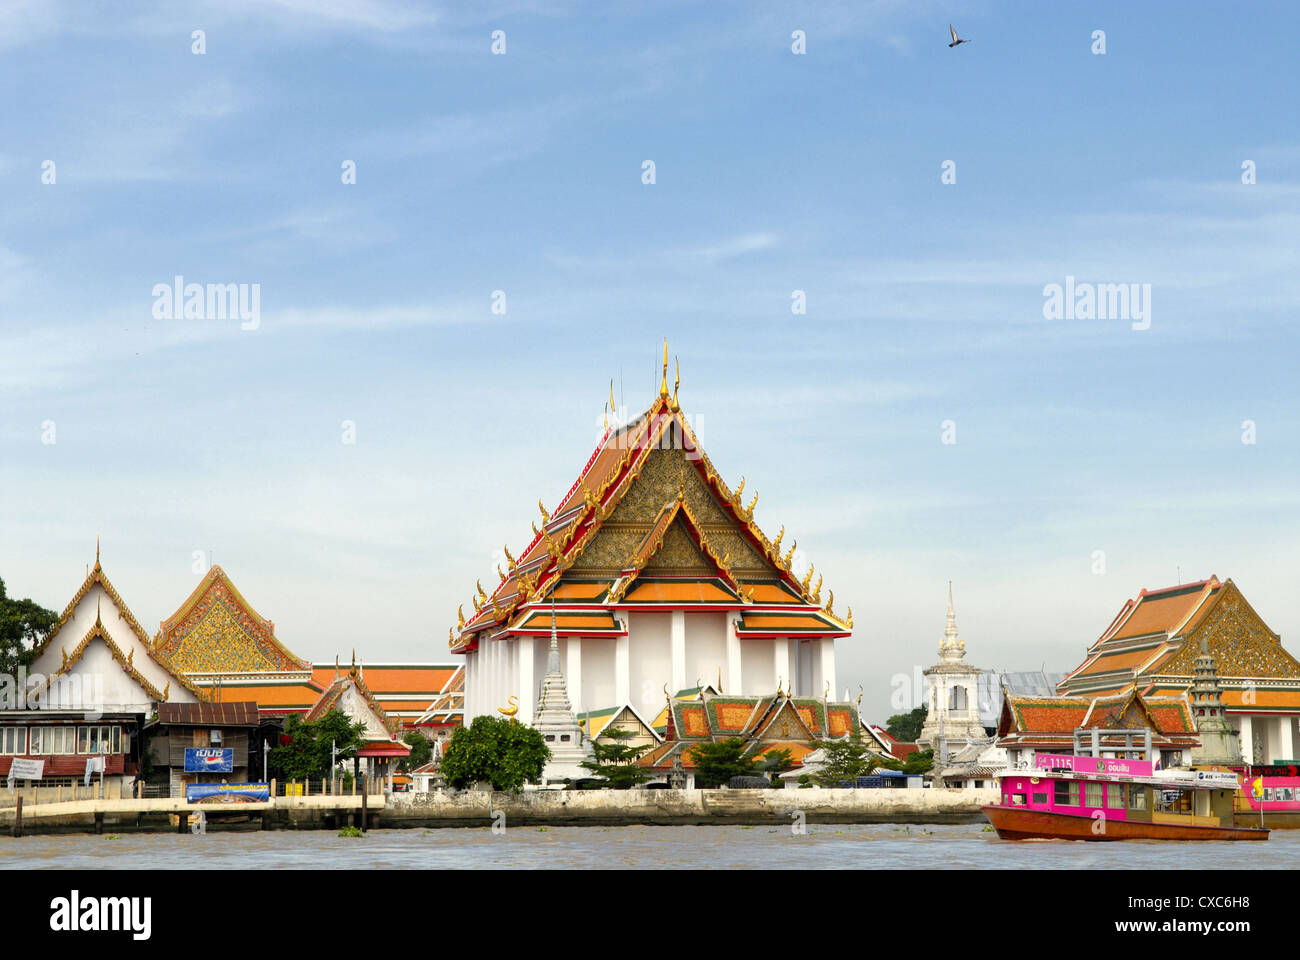 Temple at the banks of Chao Phraya River, Bangkok, Thailand Stock Photo